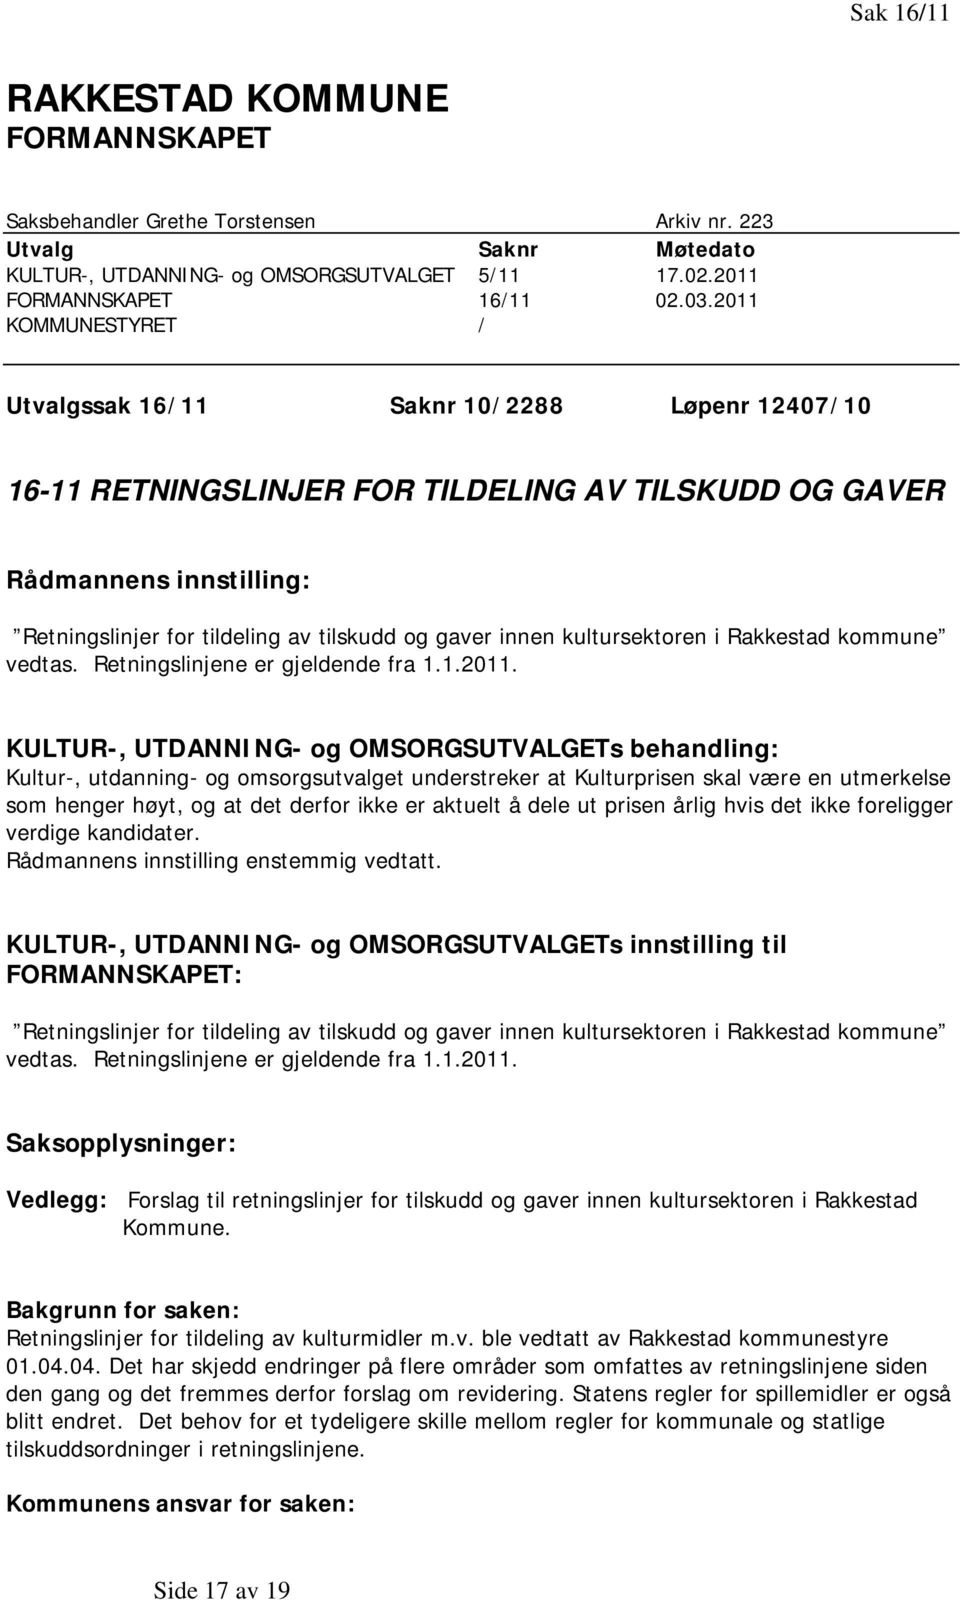 innen kultursektoren i Rakkestad kommune vedtas. Retningslinjene er gjeldende fra 1.1.2011.